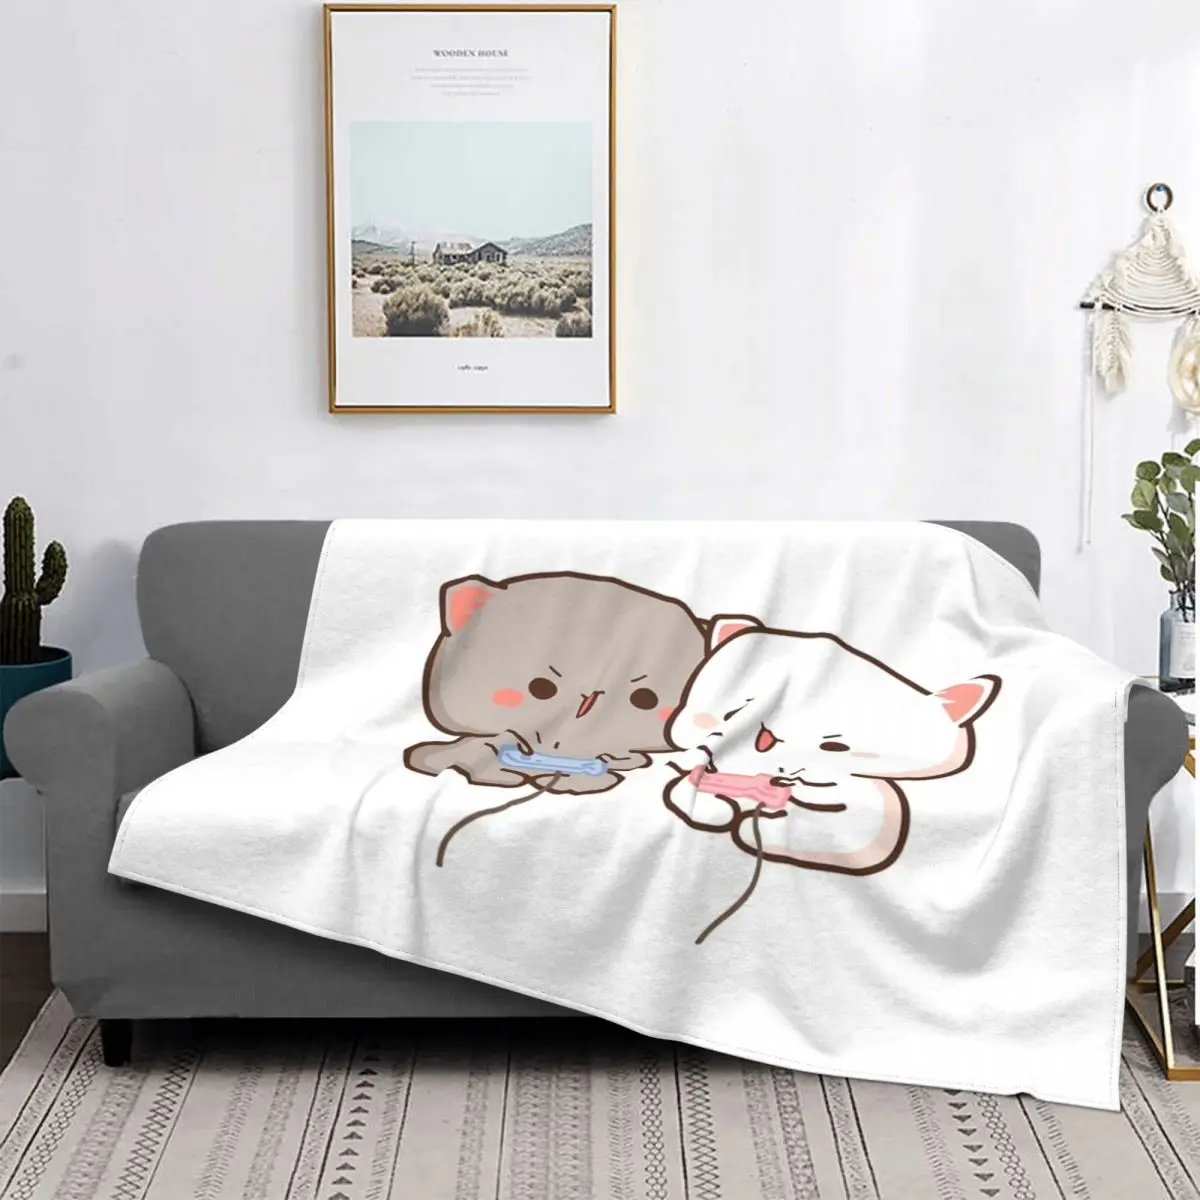 

Игровое 2 одеяло с изображением кота из персика и Гомы мочи, покрывало на кровать, пляжное покрывало на кровать, декоративное покрывало для дивана